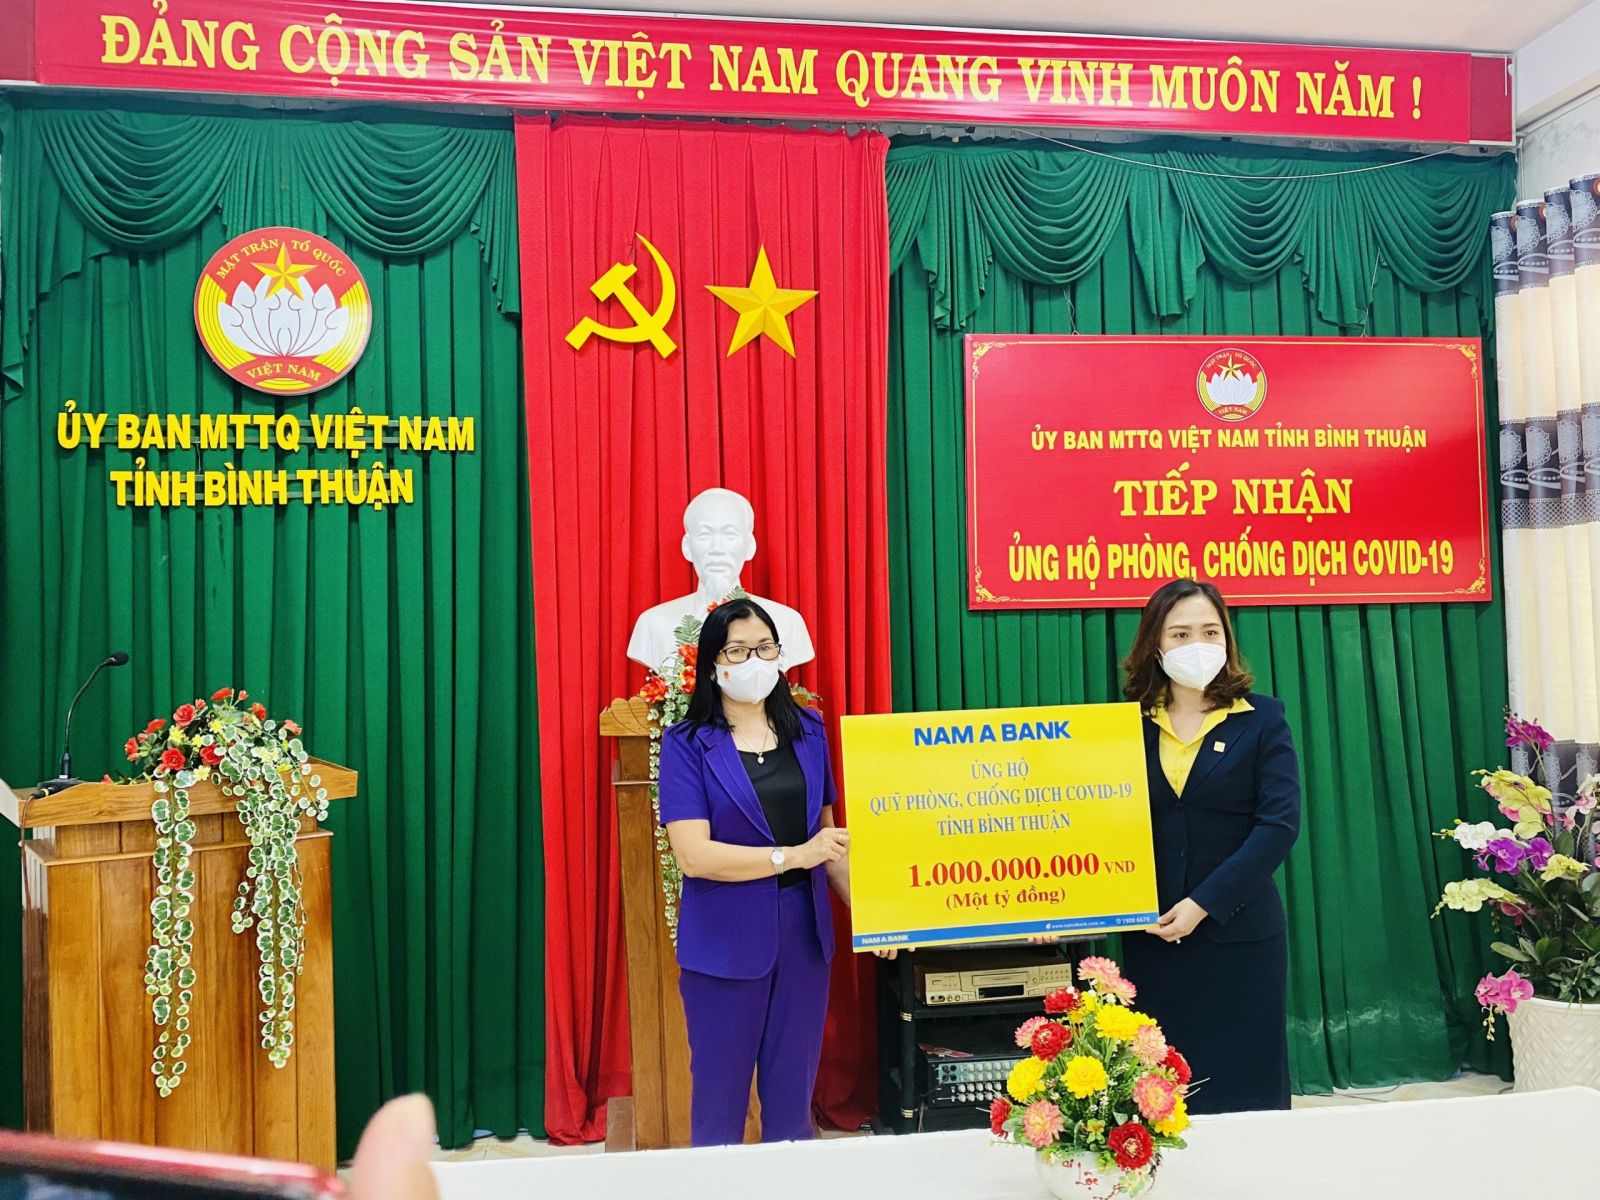 Đại diện Ủy Ban MTTQ Việt Nam tiếp nhận 1 tỷ đồng ủng hộ từ bà Tân Thị Lệ Huyền - Giám đốc Nam A Bank Bình Thuận